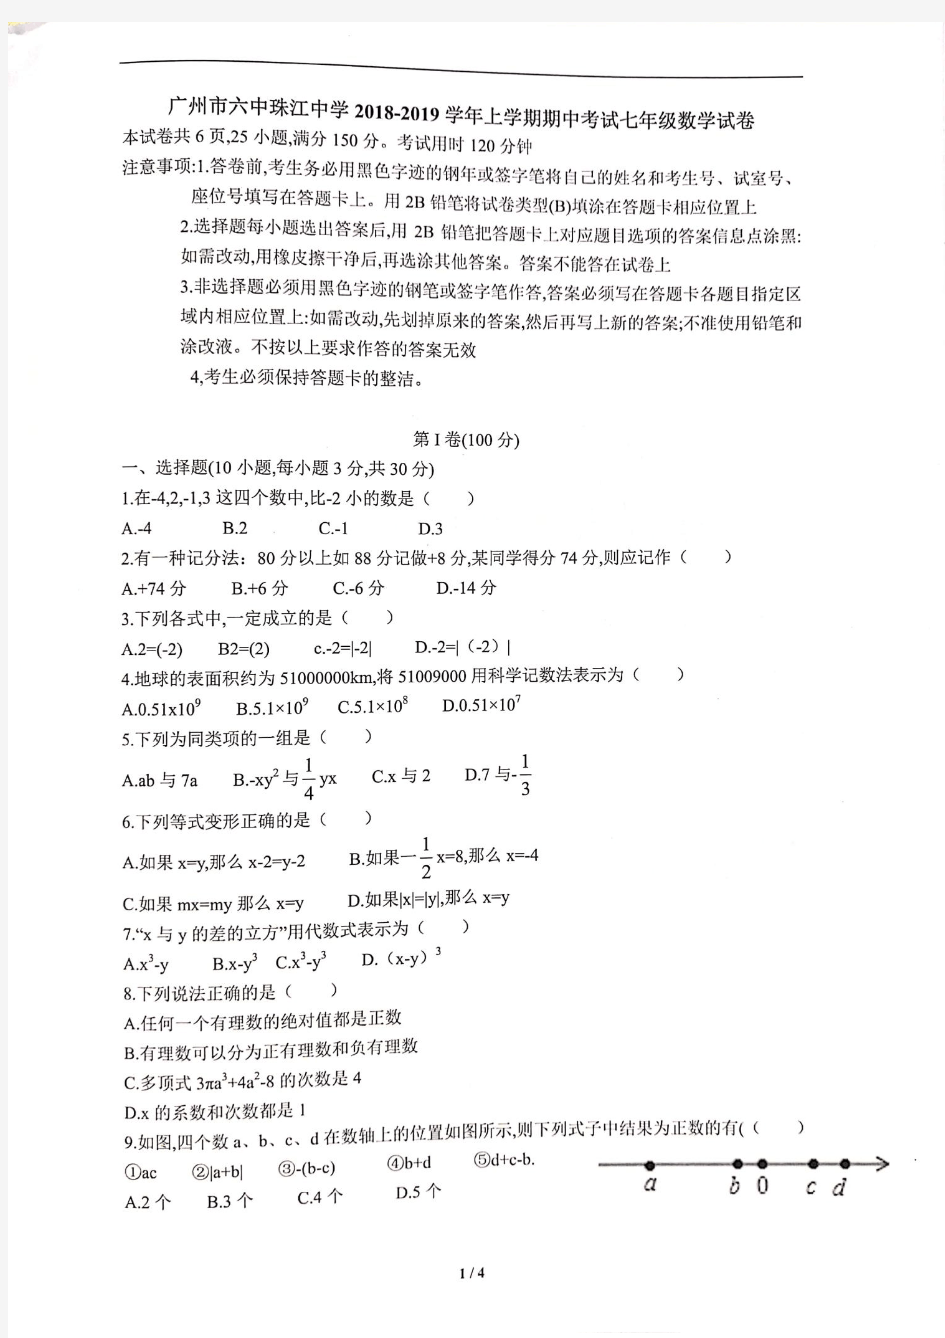 【数学】广州市六中珠江中学2018-2019学年上学期期中考试七年级数学试卷